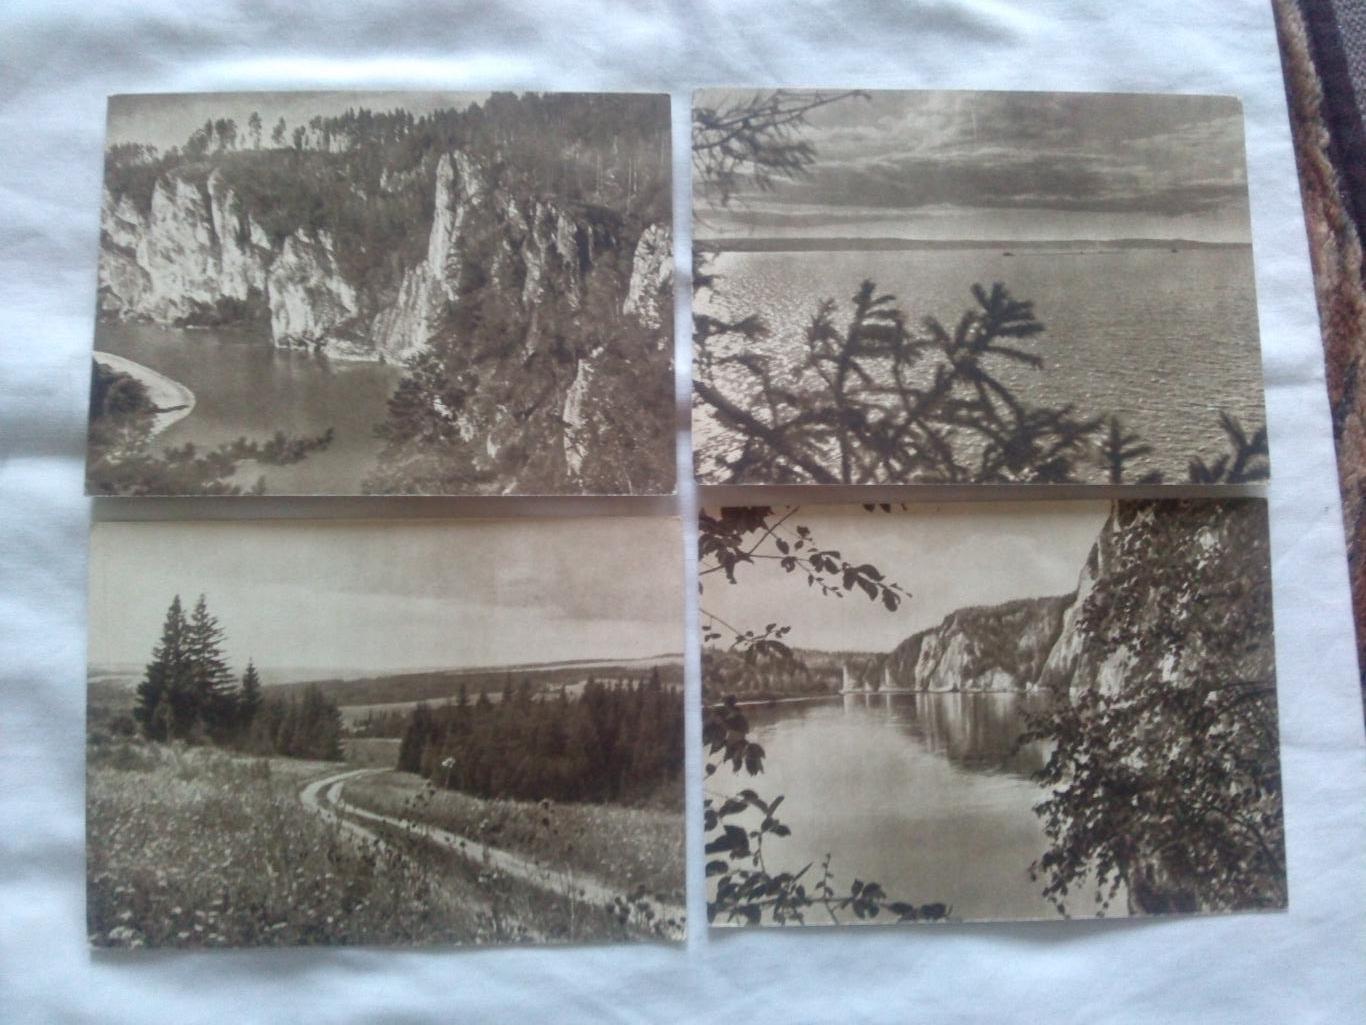 Памятные места СССР : Урал 1956 г. (Изогиз) полный набор - 15 открыток (чистые) 2